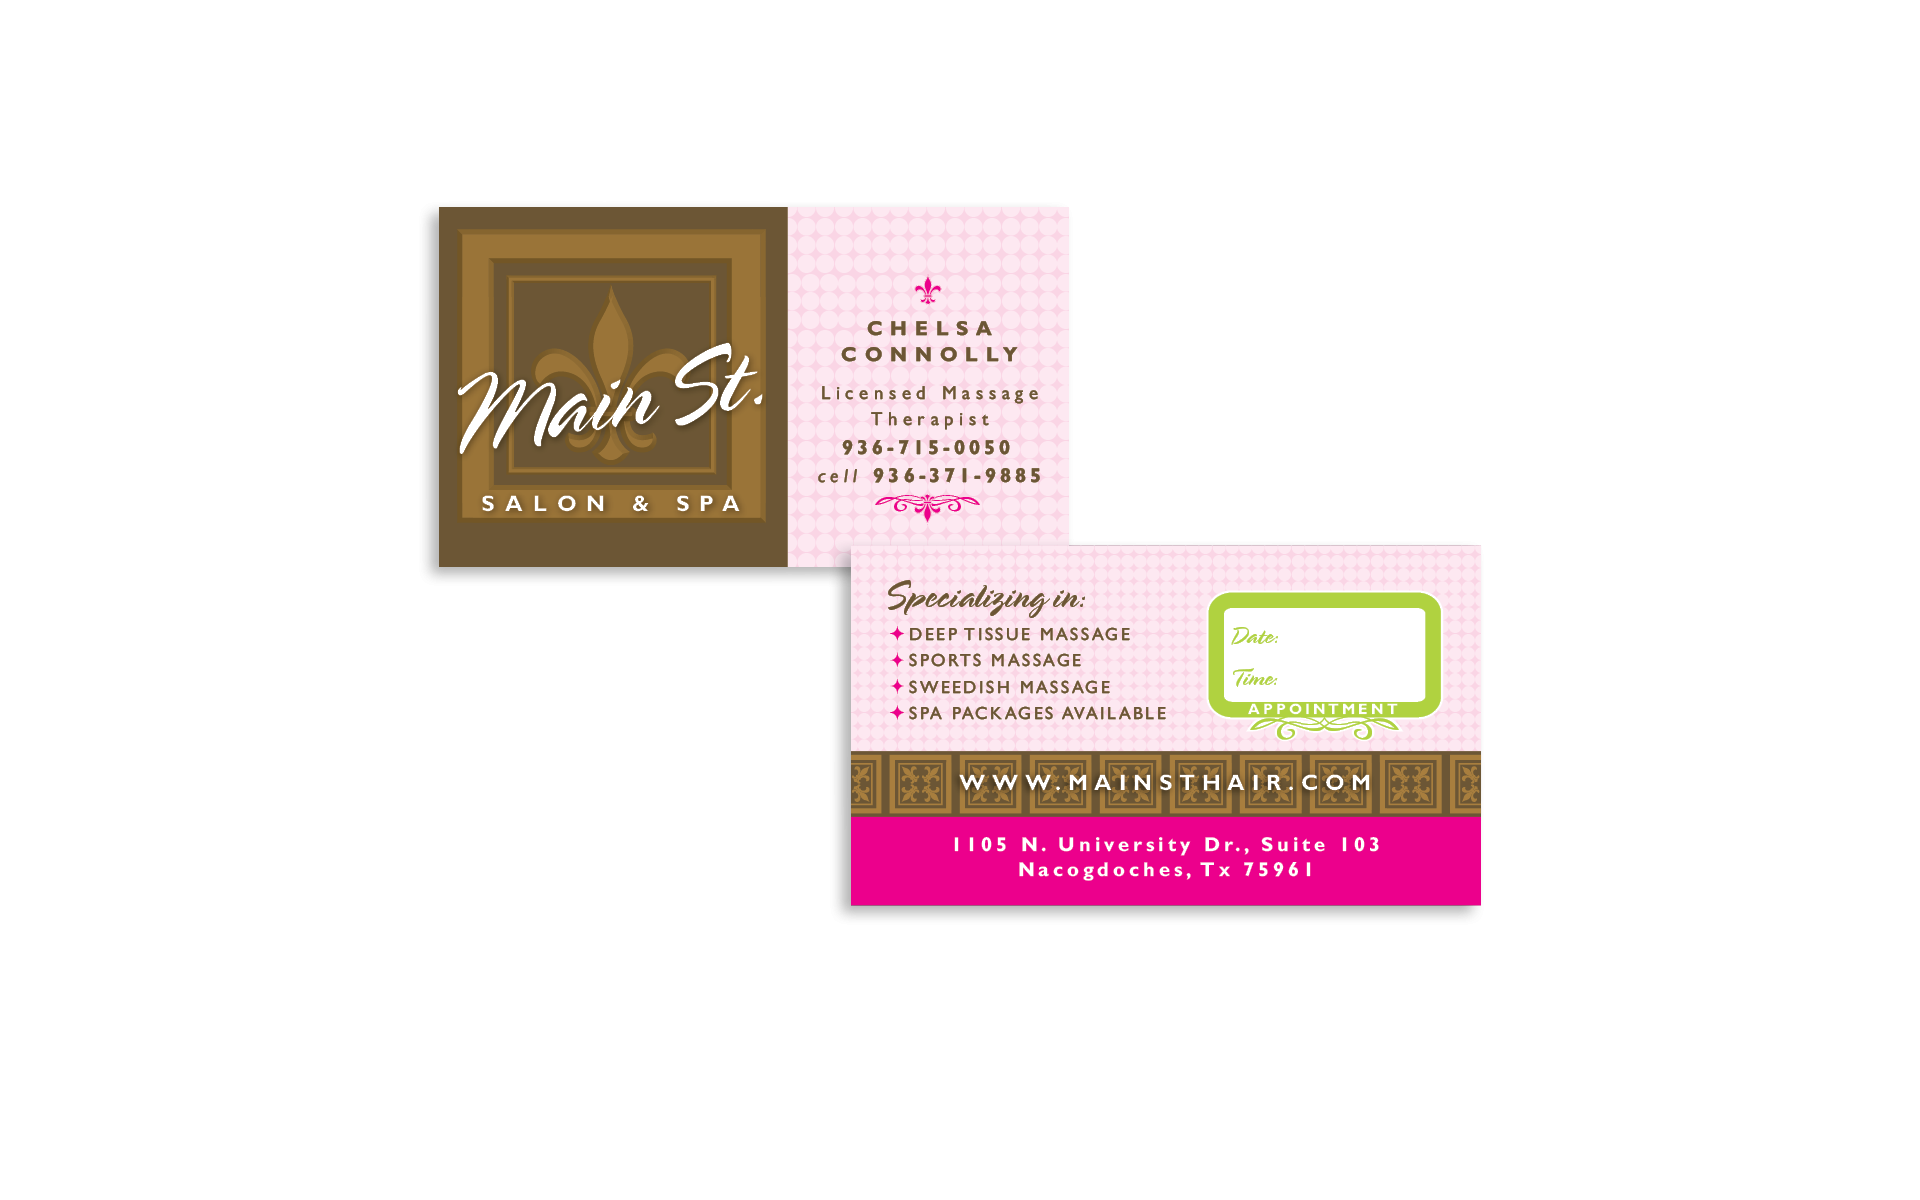 MAIN ST. SALON & SPA BUSINESS CARD